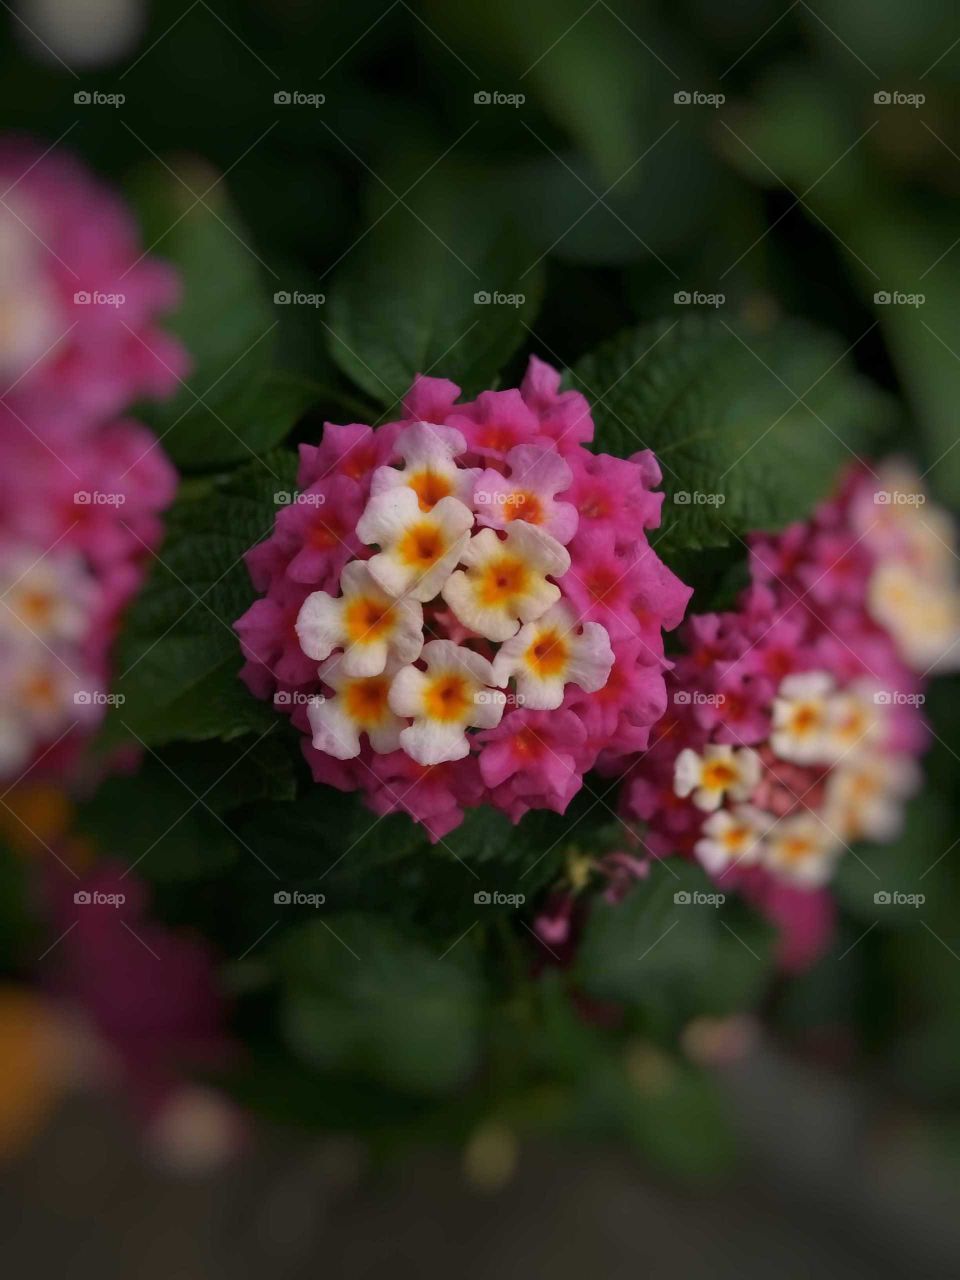 pink shades
Lantana camara
flower